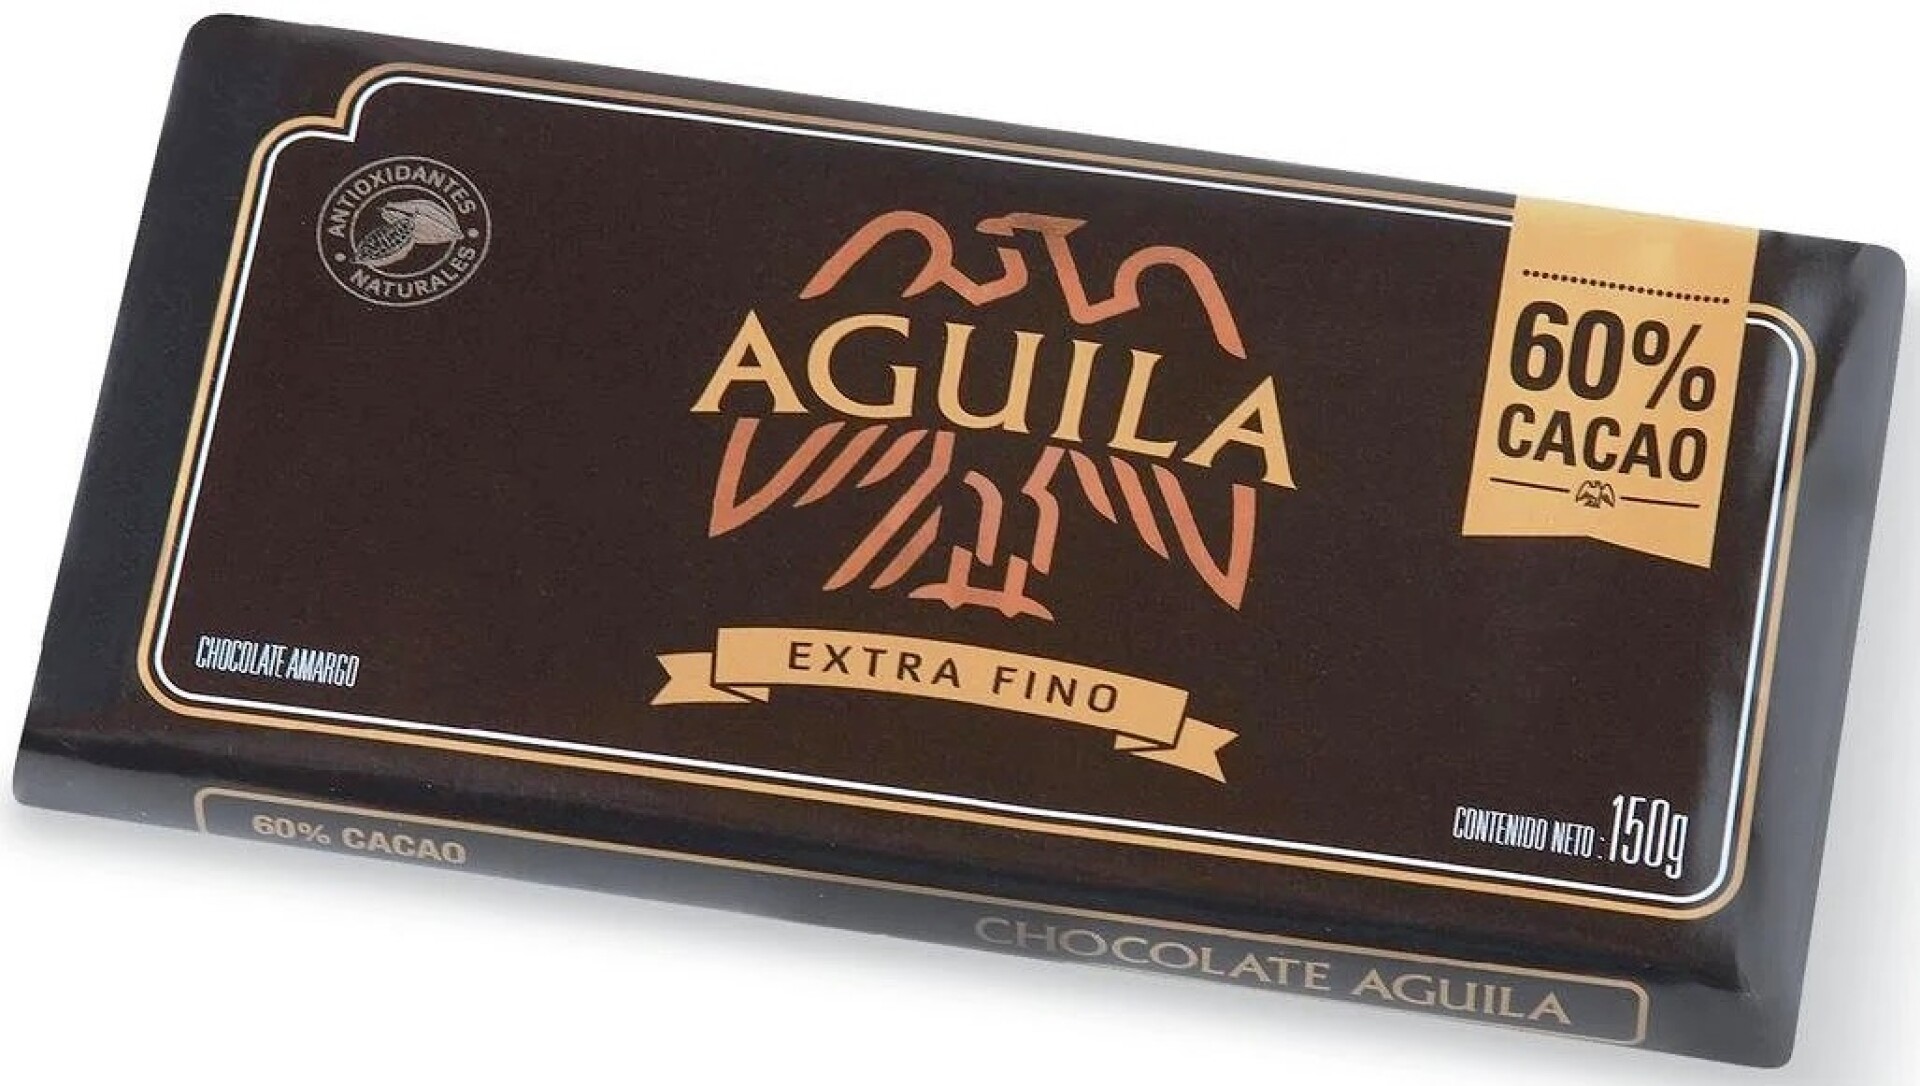 TABLETA CHOCOLATE AGUILA EXT FINO 150G 60% CACAO 